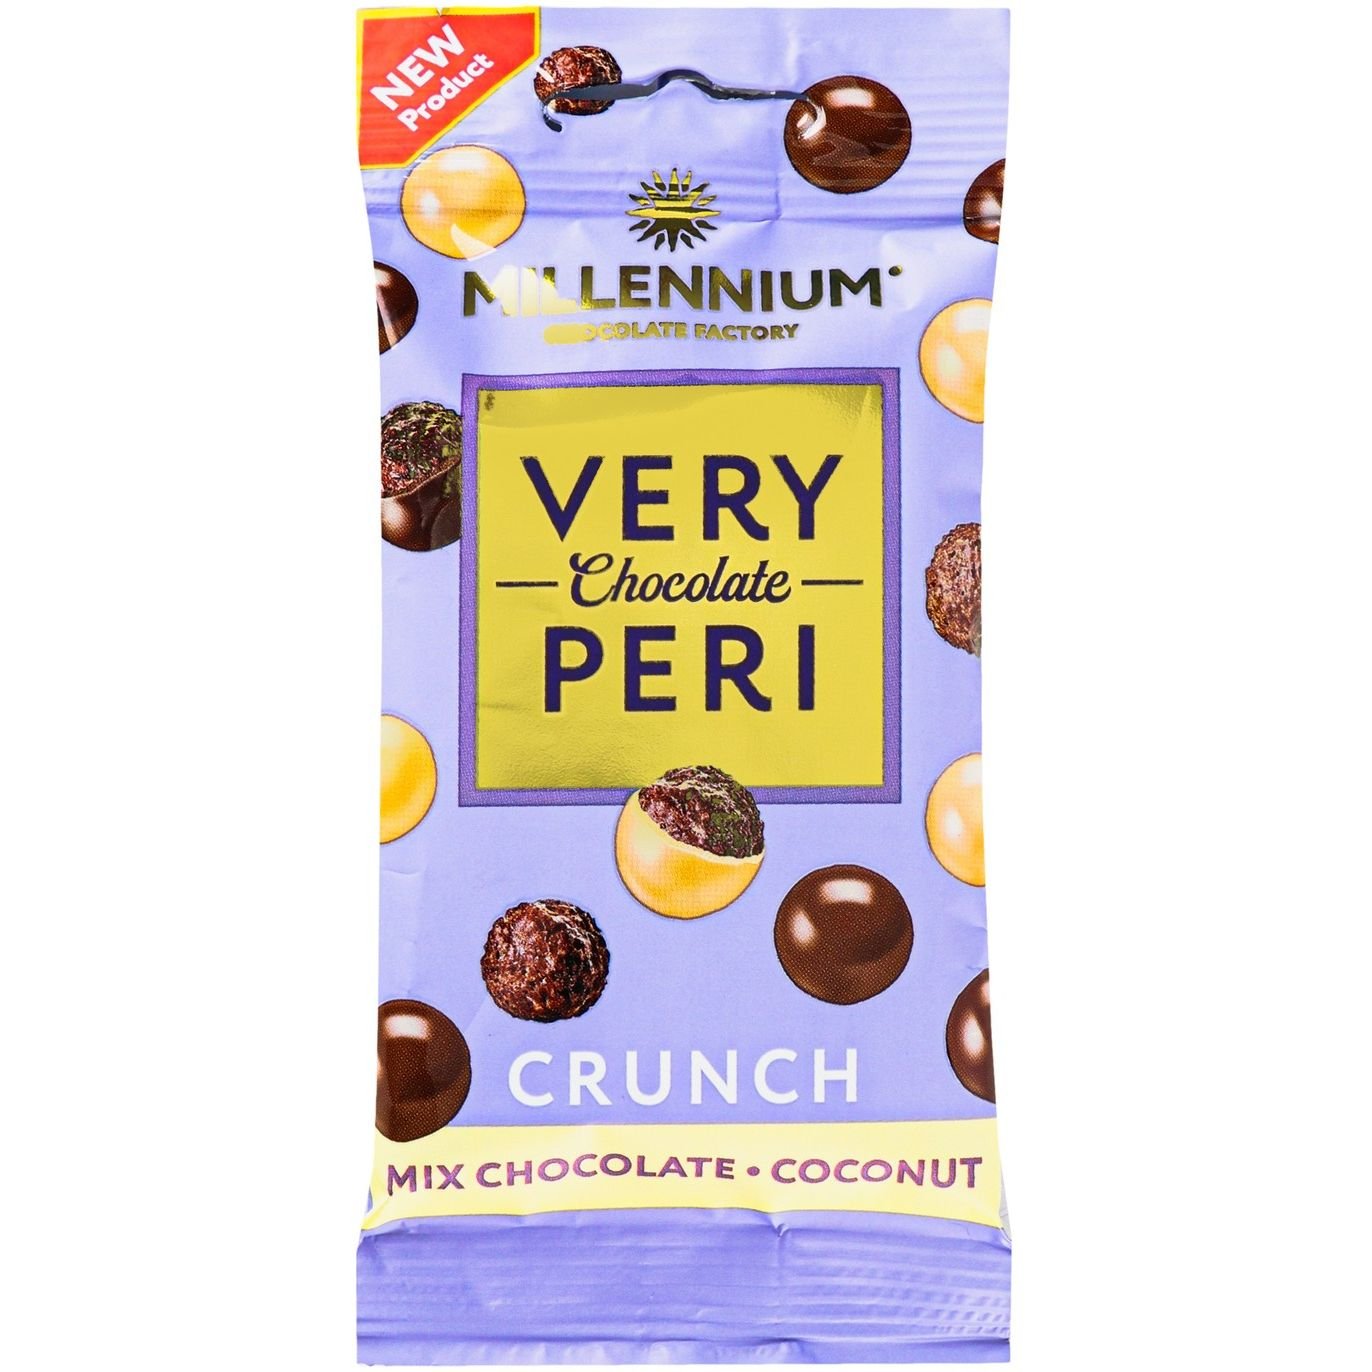 Драже Millennium Very Peri Crunch в шоколаде с кокосом 30 г (924029) - фото 1